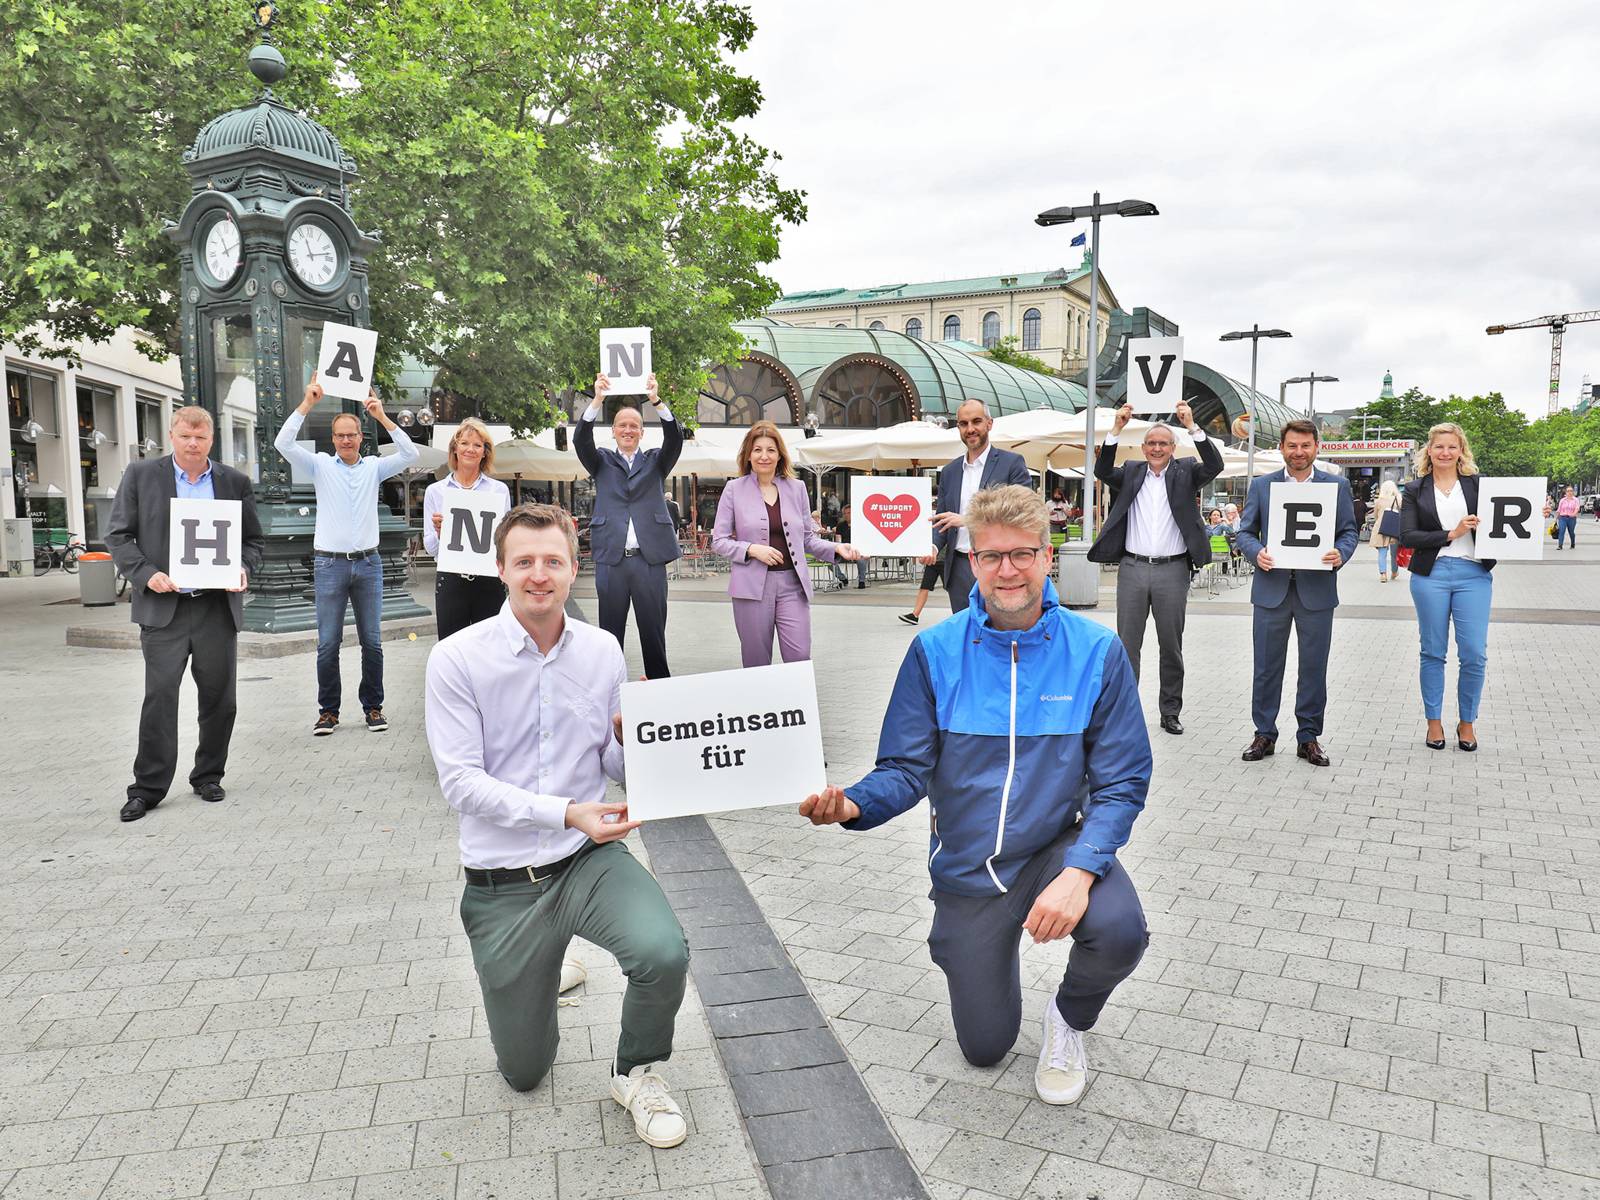 Elf Personen stehen auf einem Platz und bilden mit Schildern den Schriftzug "Gemeinsam für Hannover"